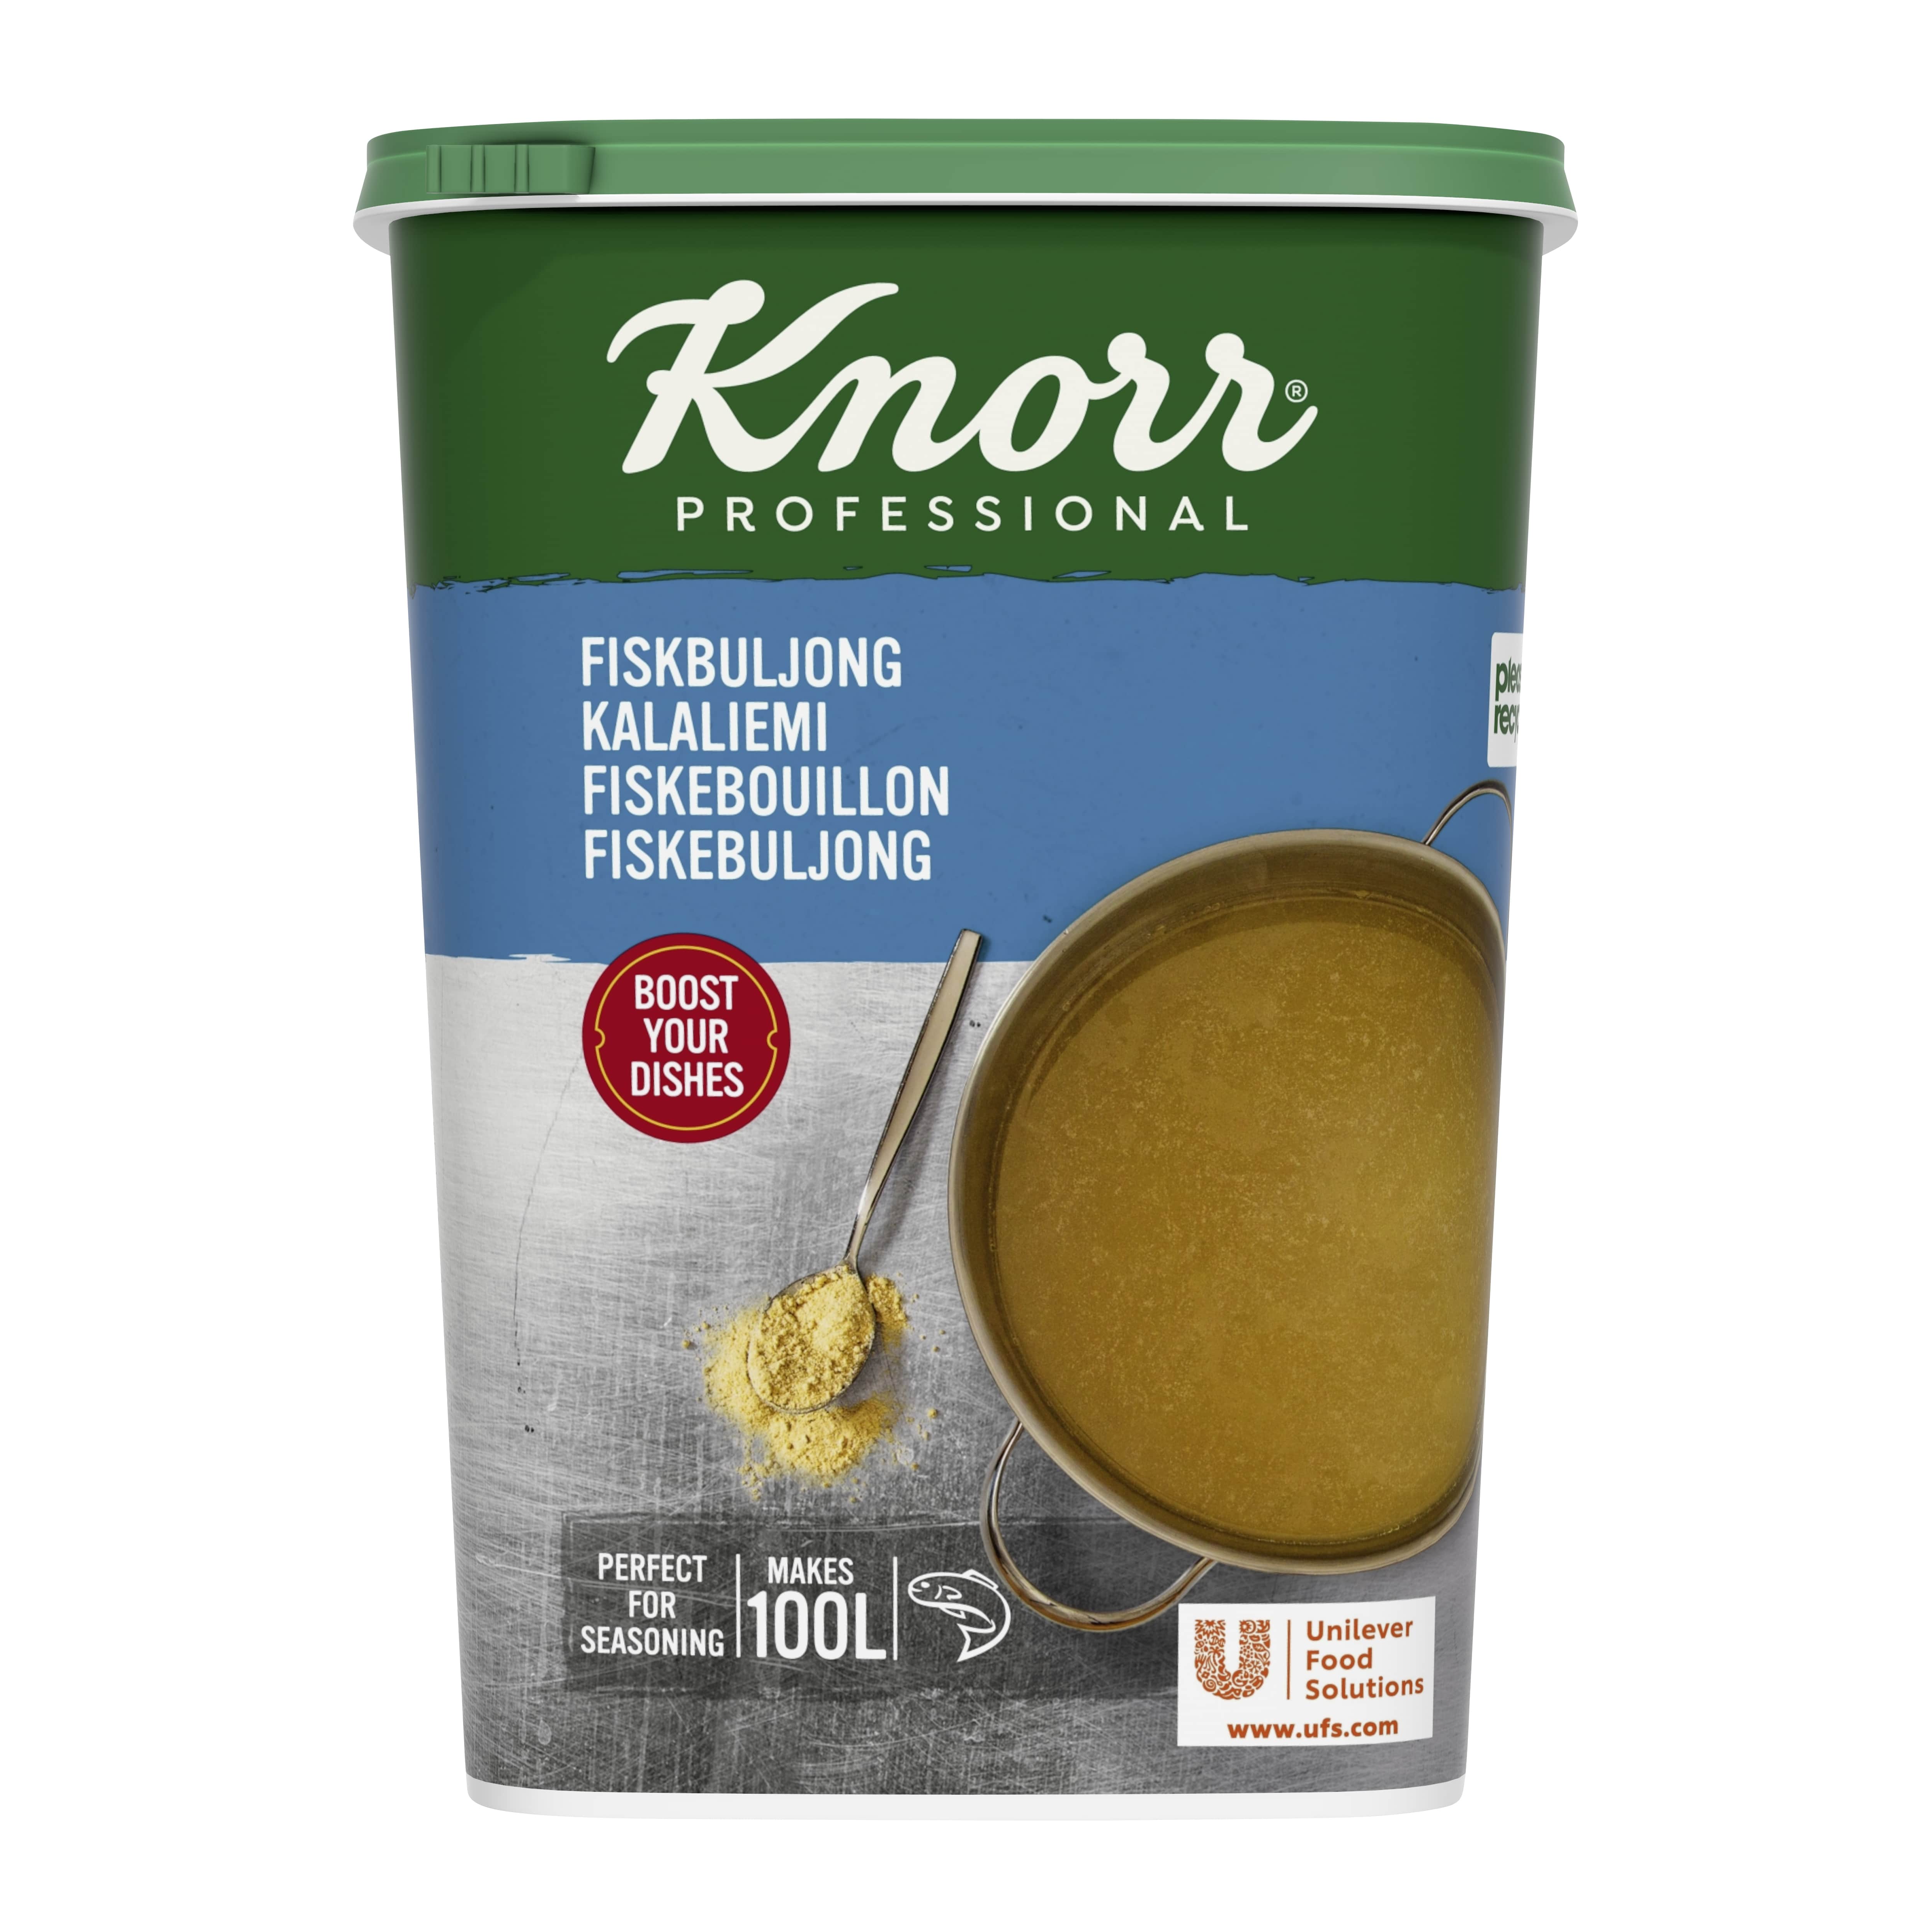 Knorr Kalaliemi 1,5 kg / 100 L